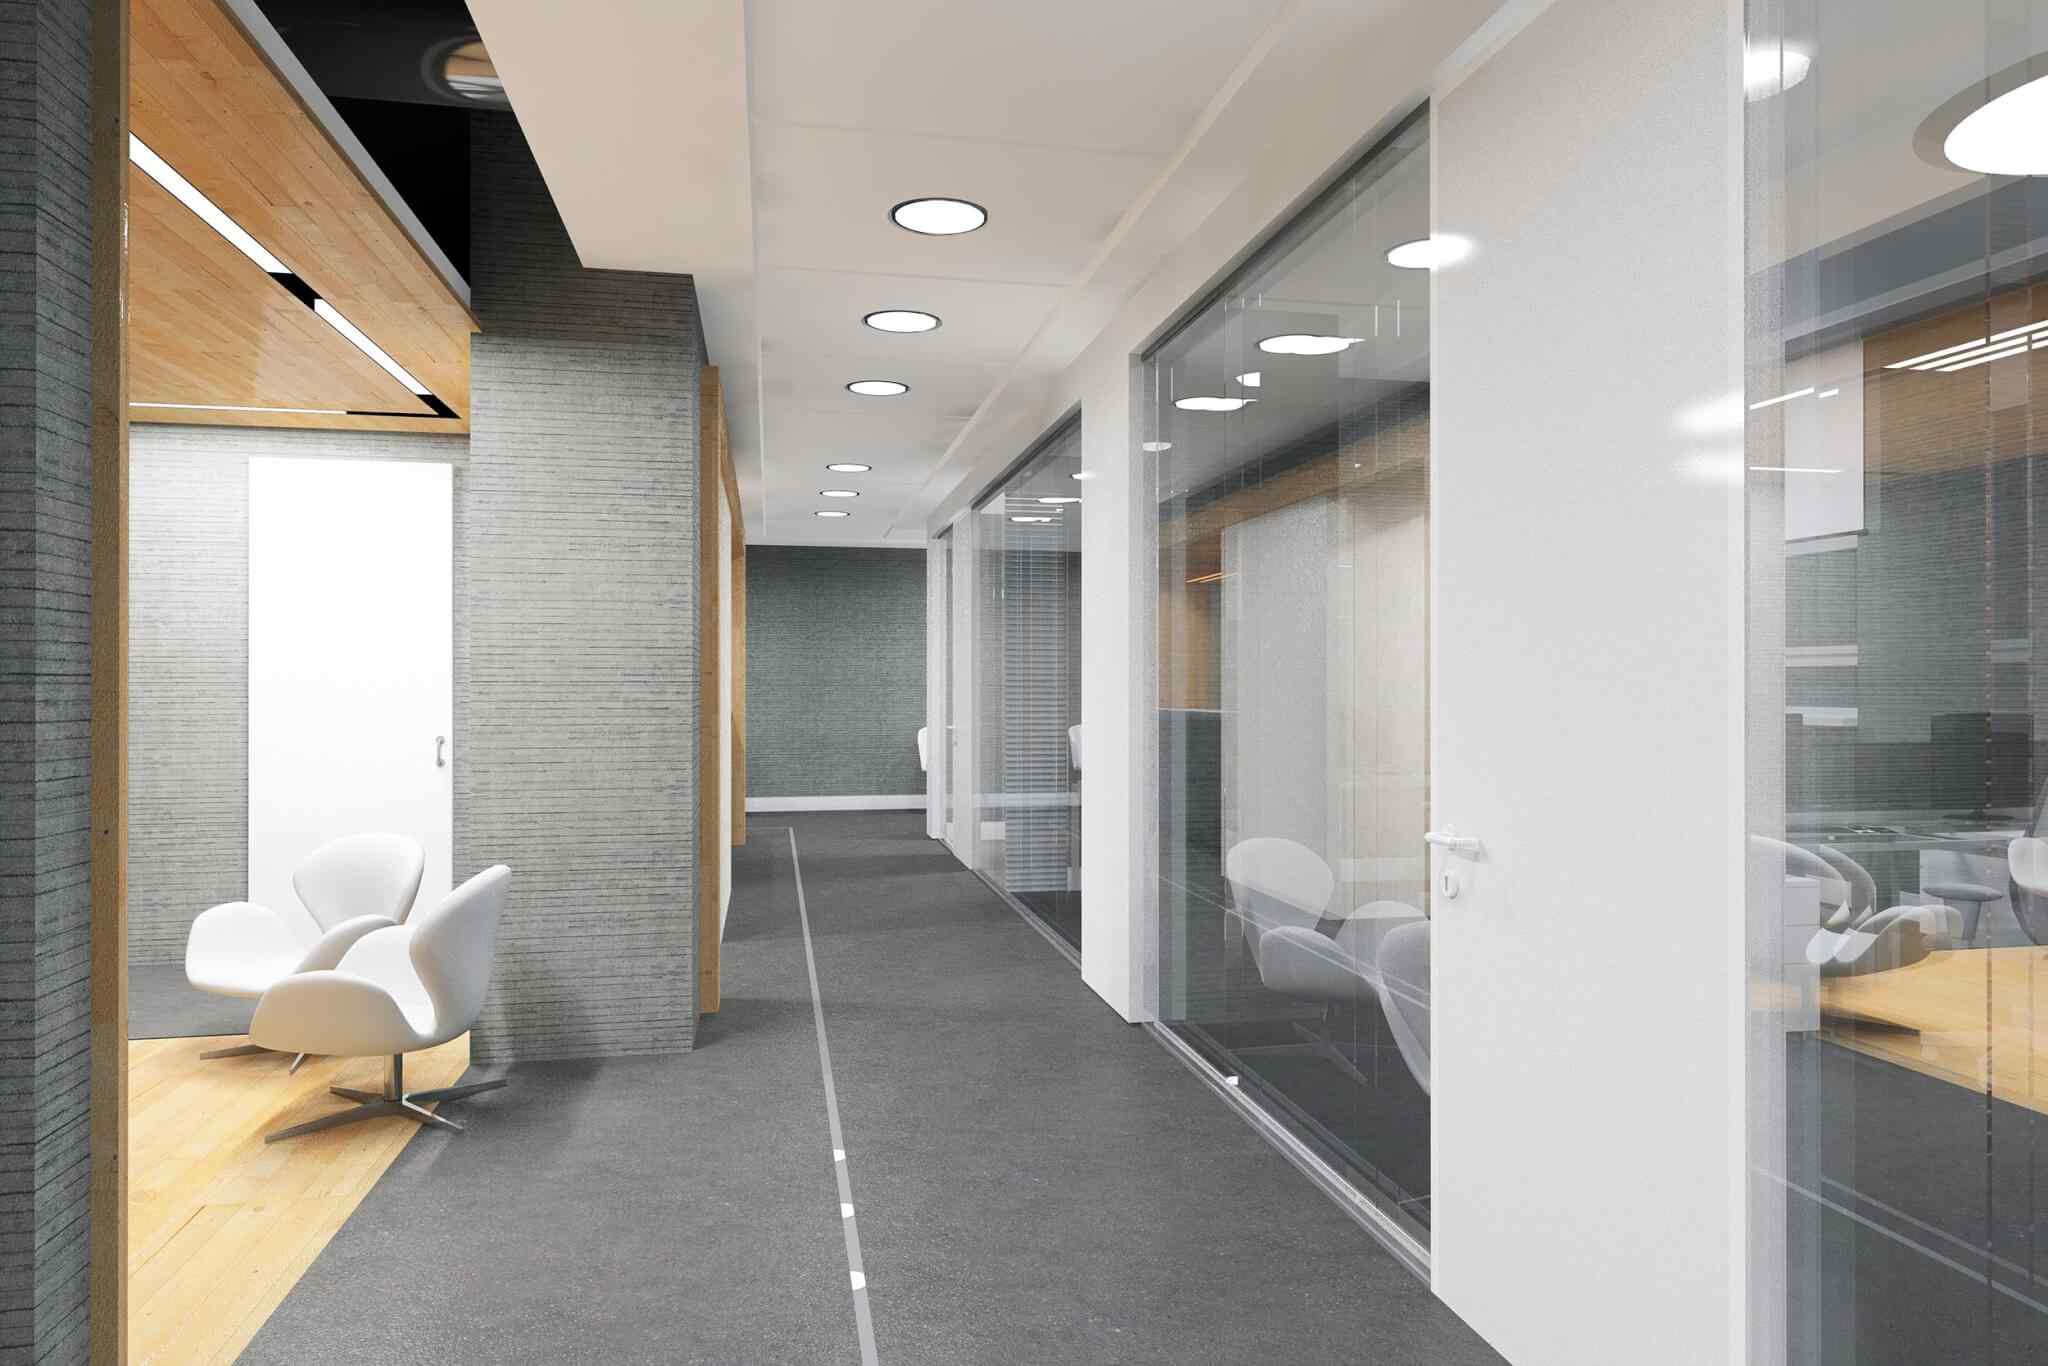 Corridor design